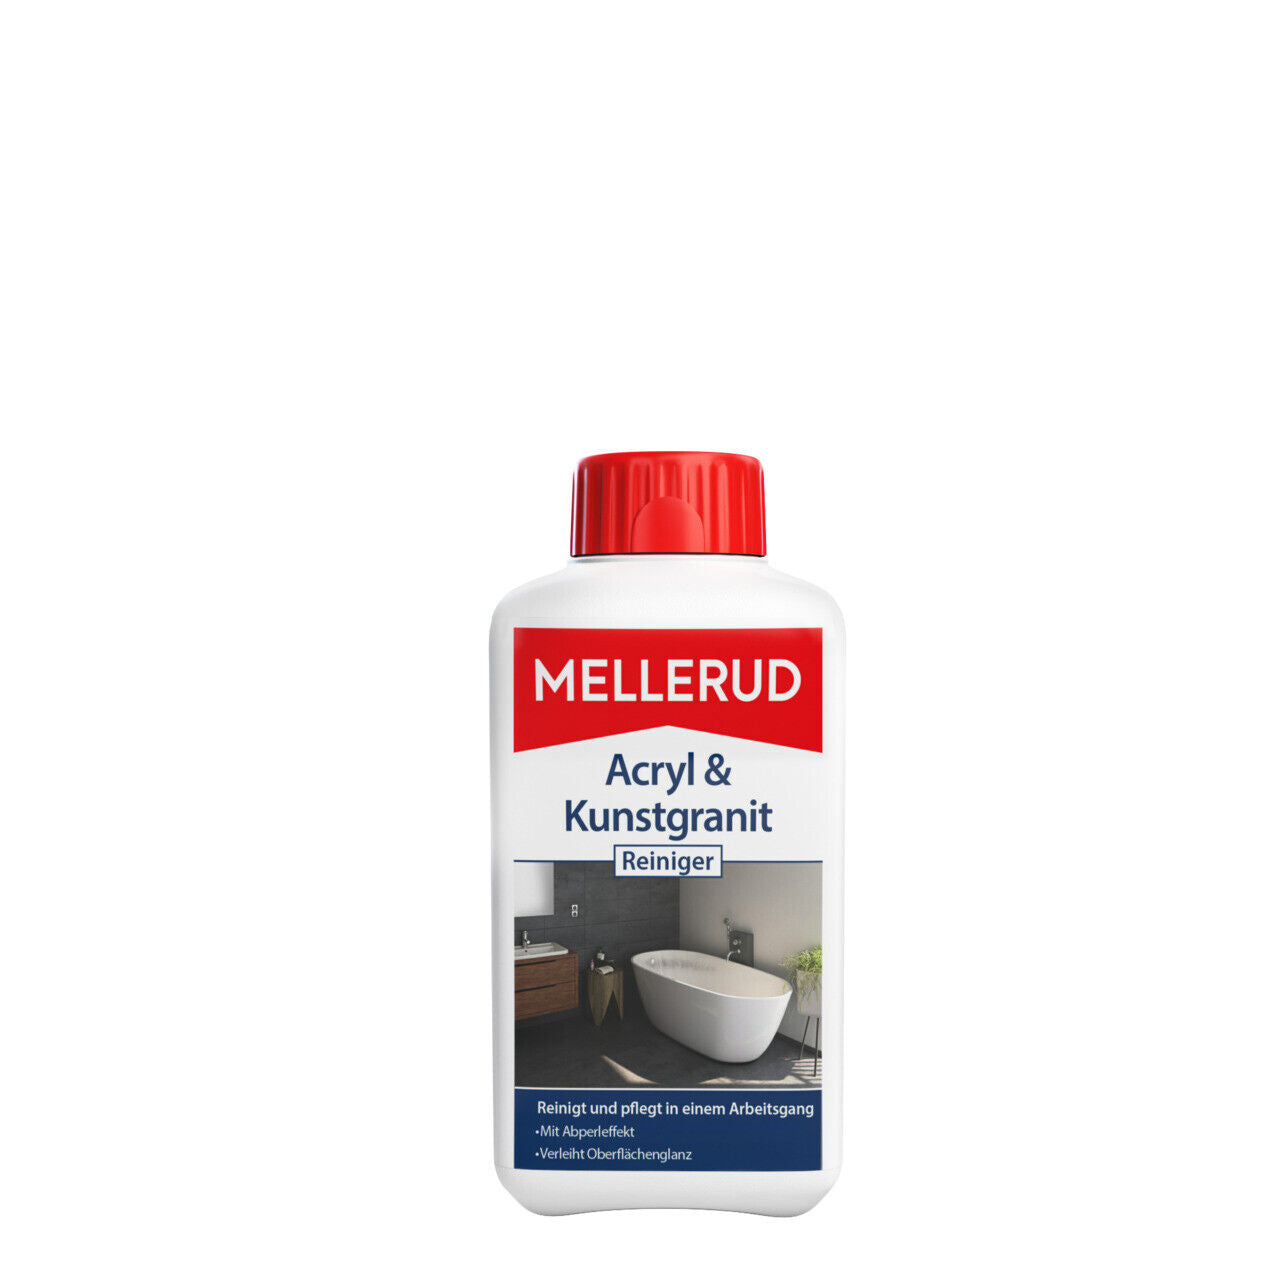 MELLERUD Acryl & Kunstgranit Reiniger | 1 x 0,5 l | Reinigungsmittel zum Entfernen von Ablagerungen auf Acryl-, Kunstgranit- und Anderen Oberflächen